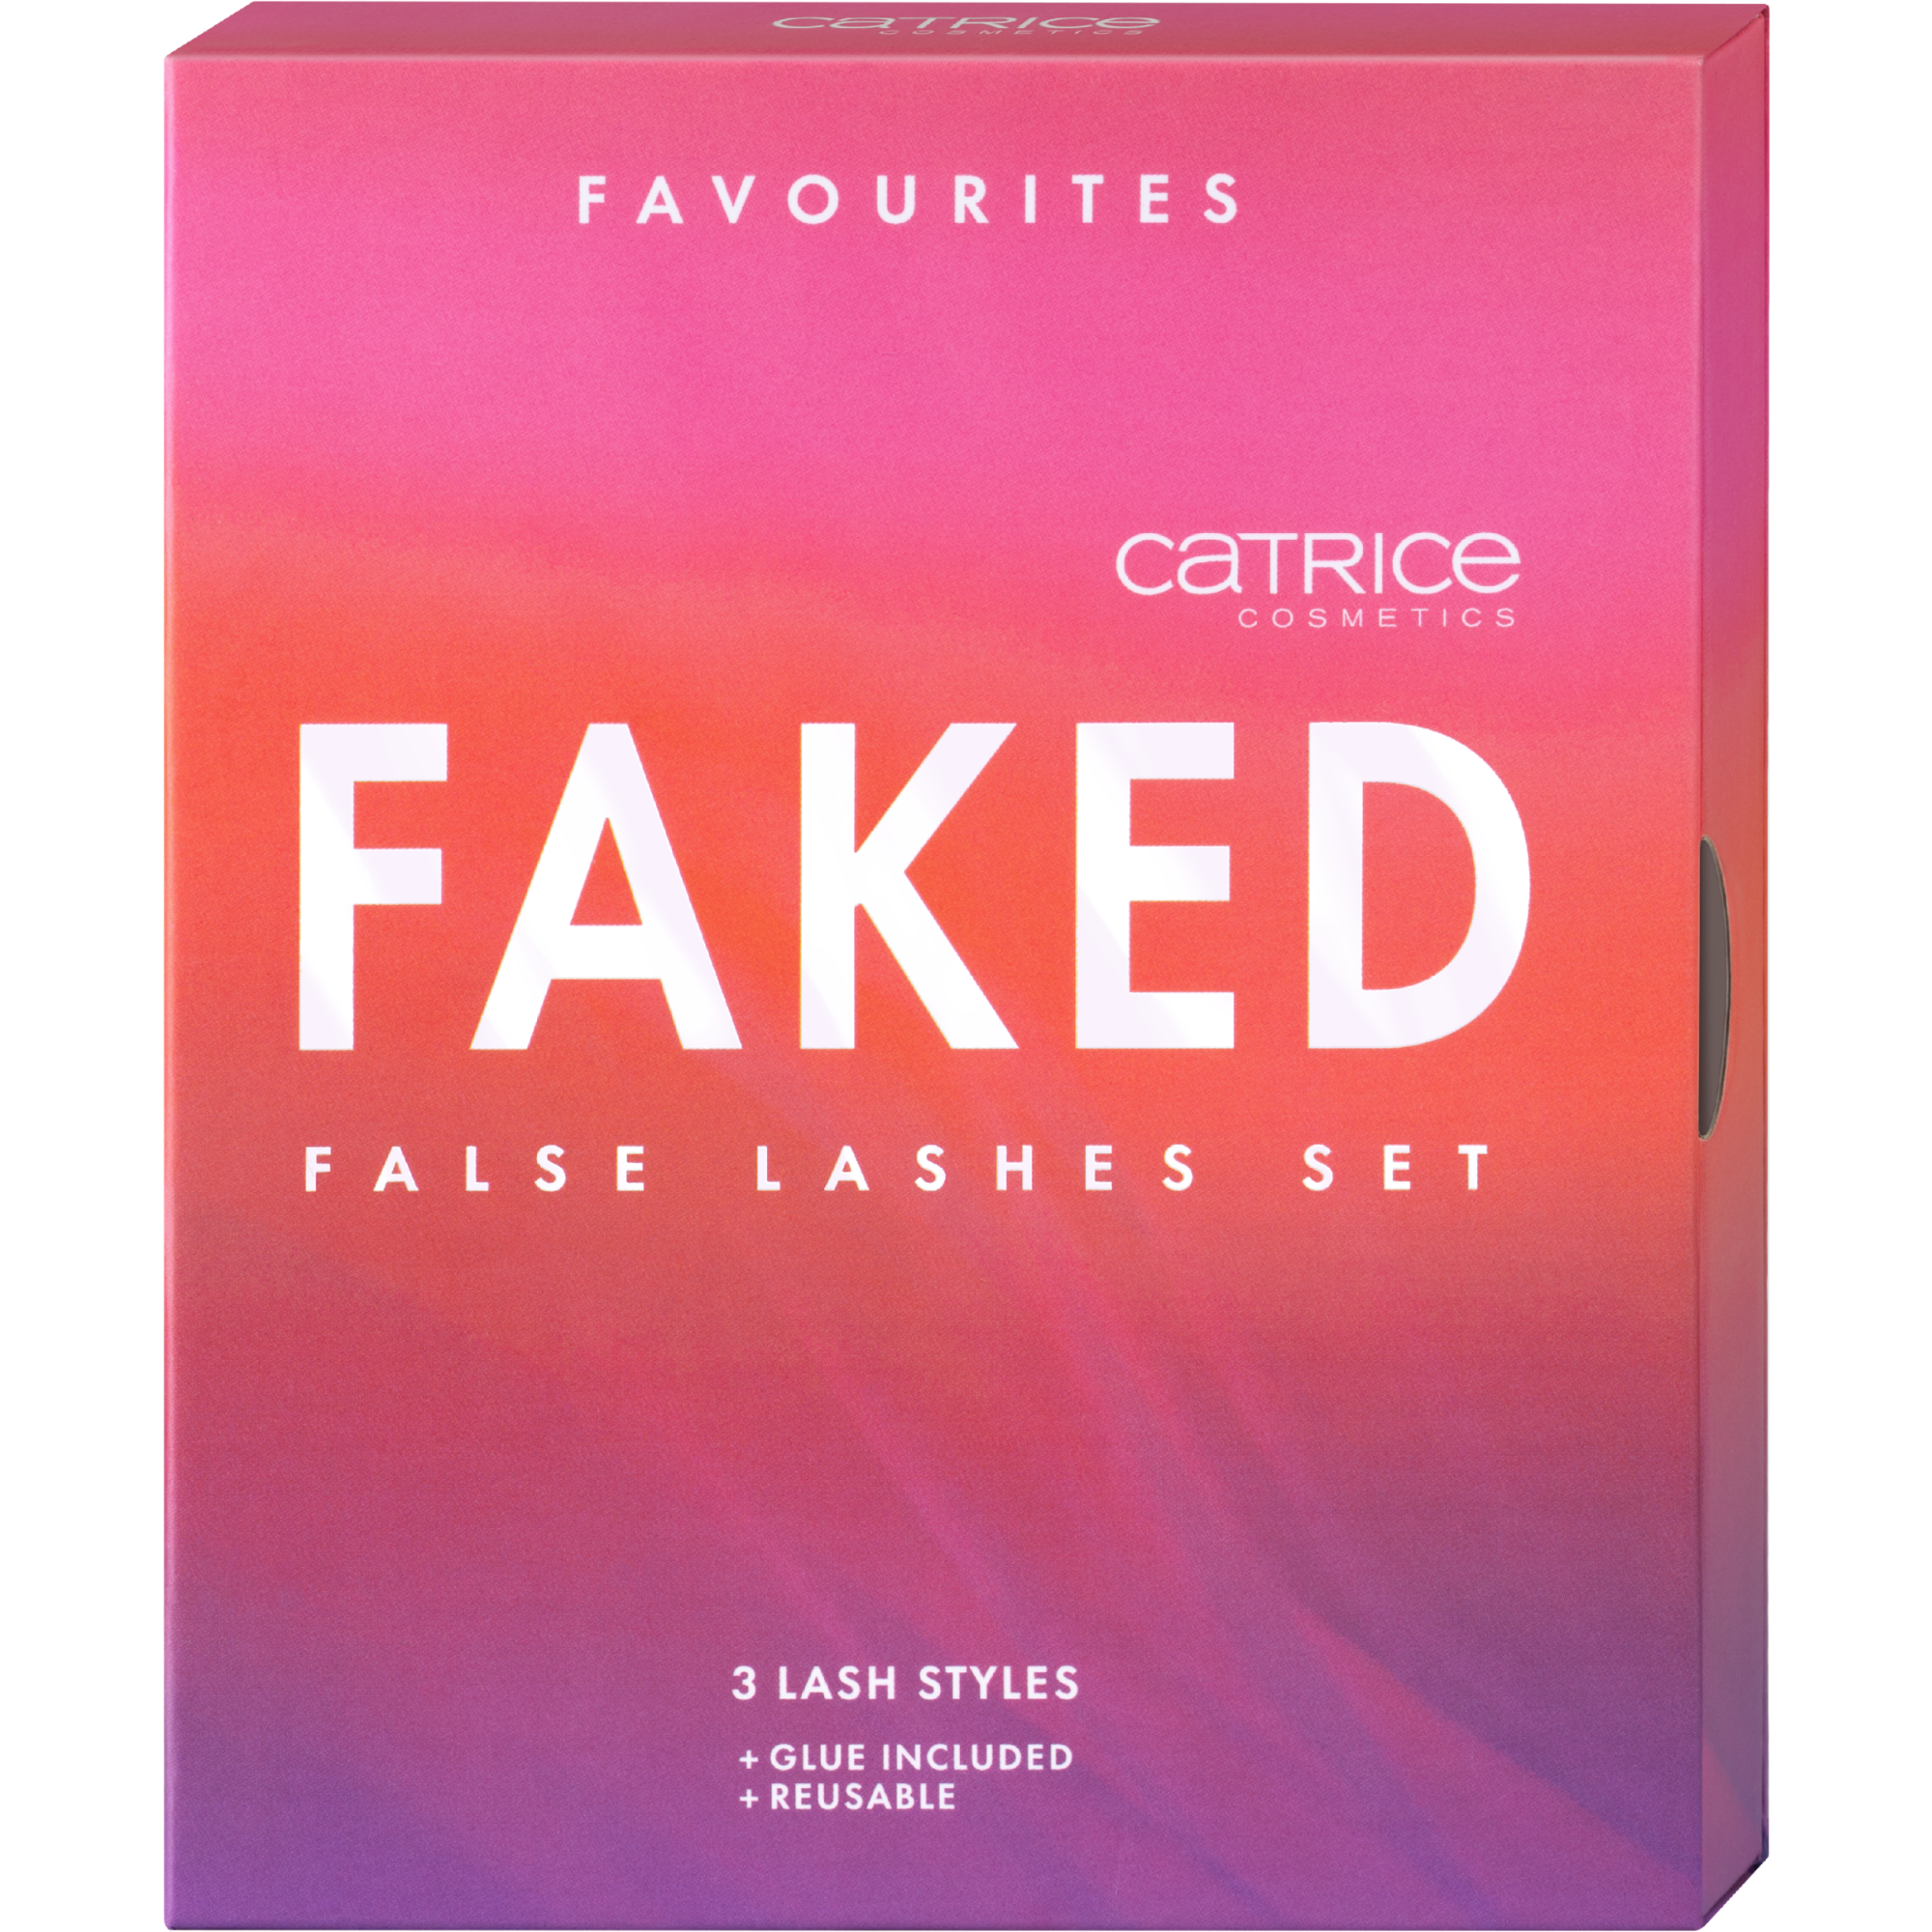 Faked False Lashes Set